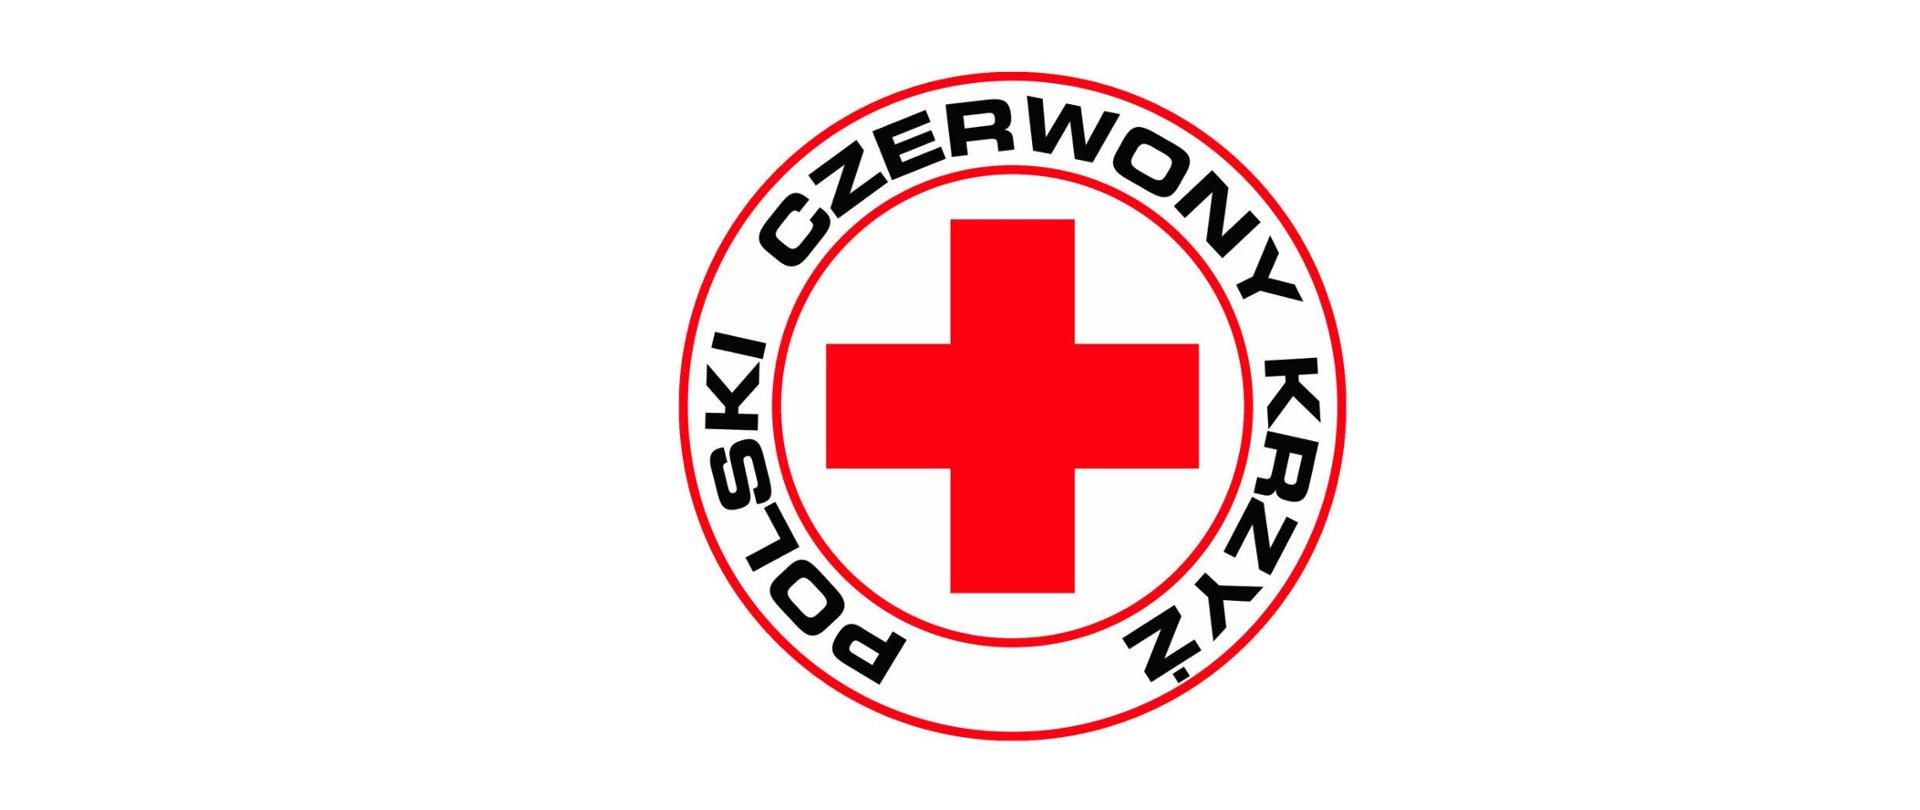 Logo Polskiego Czerwonego Krzyża. Napis Polski Czerwony Krzyż w kole i czerwony krzyż.